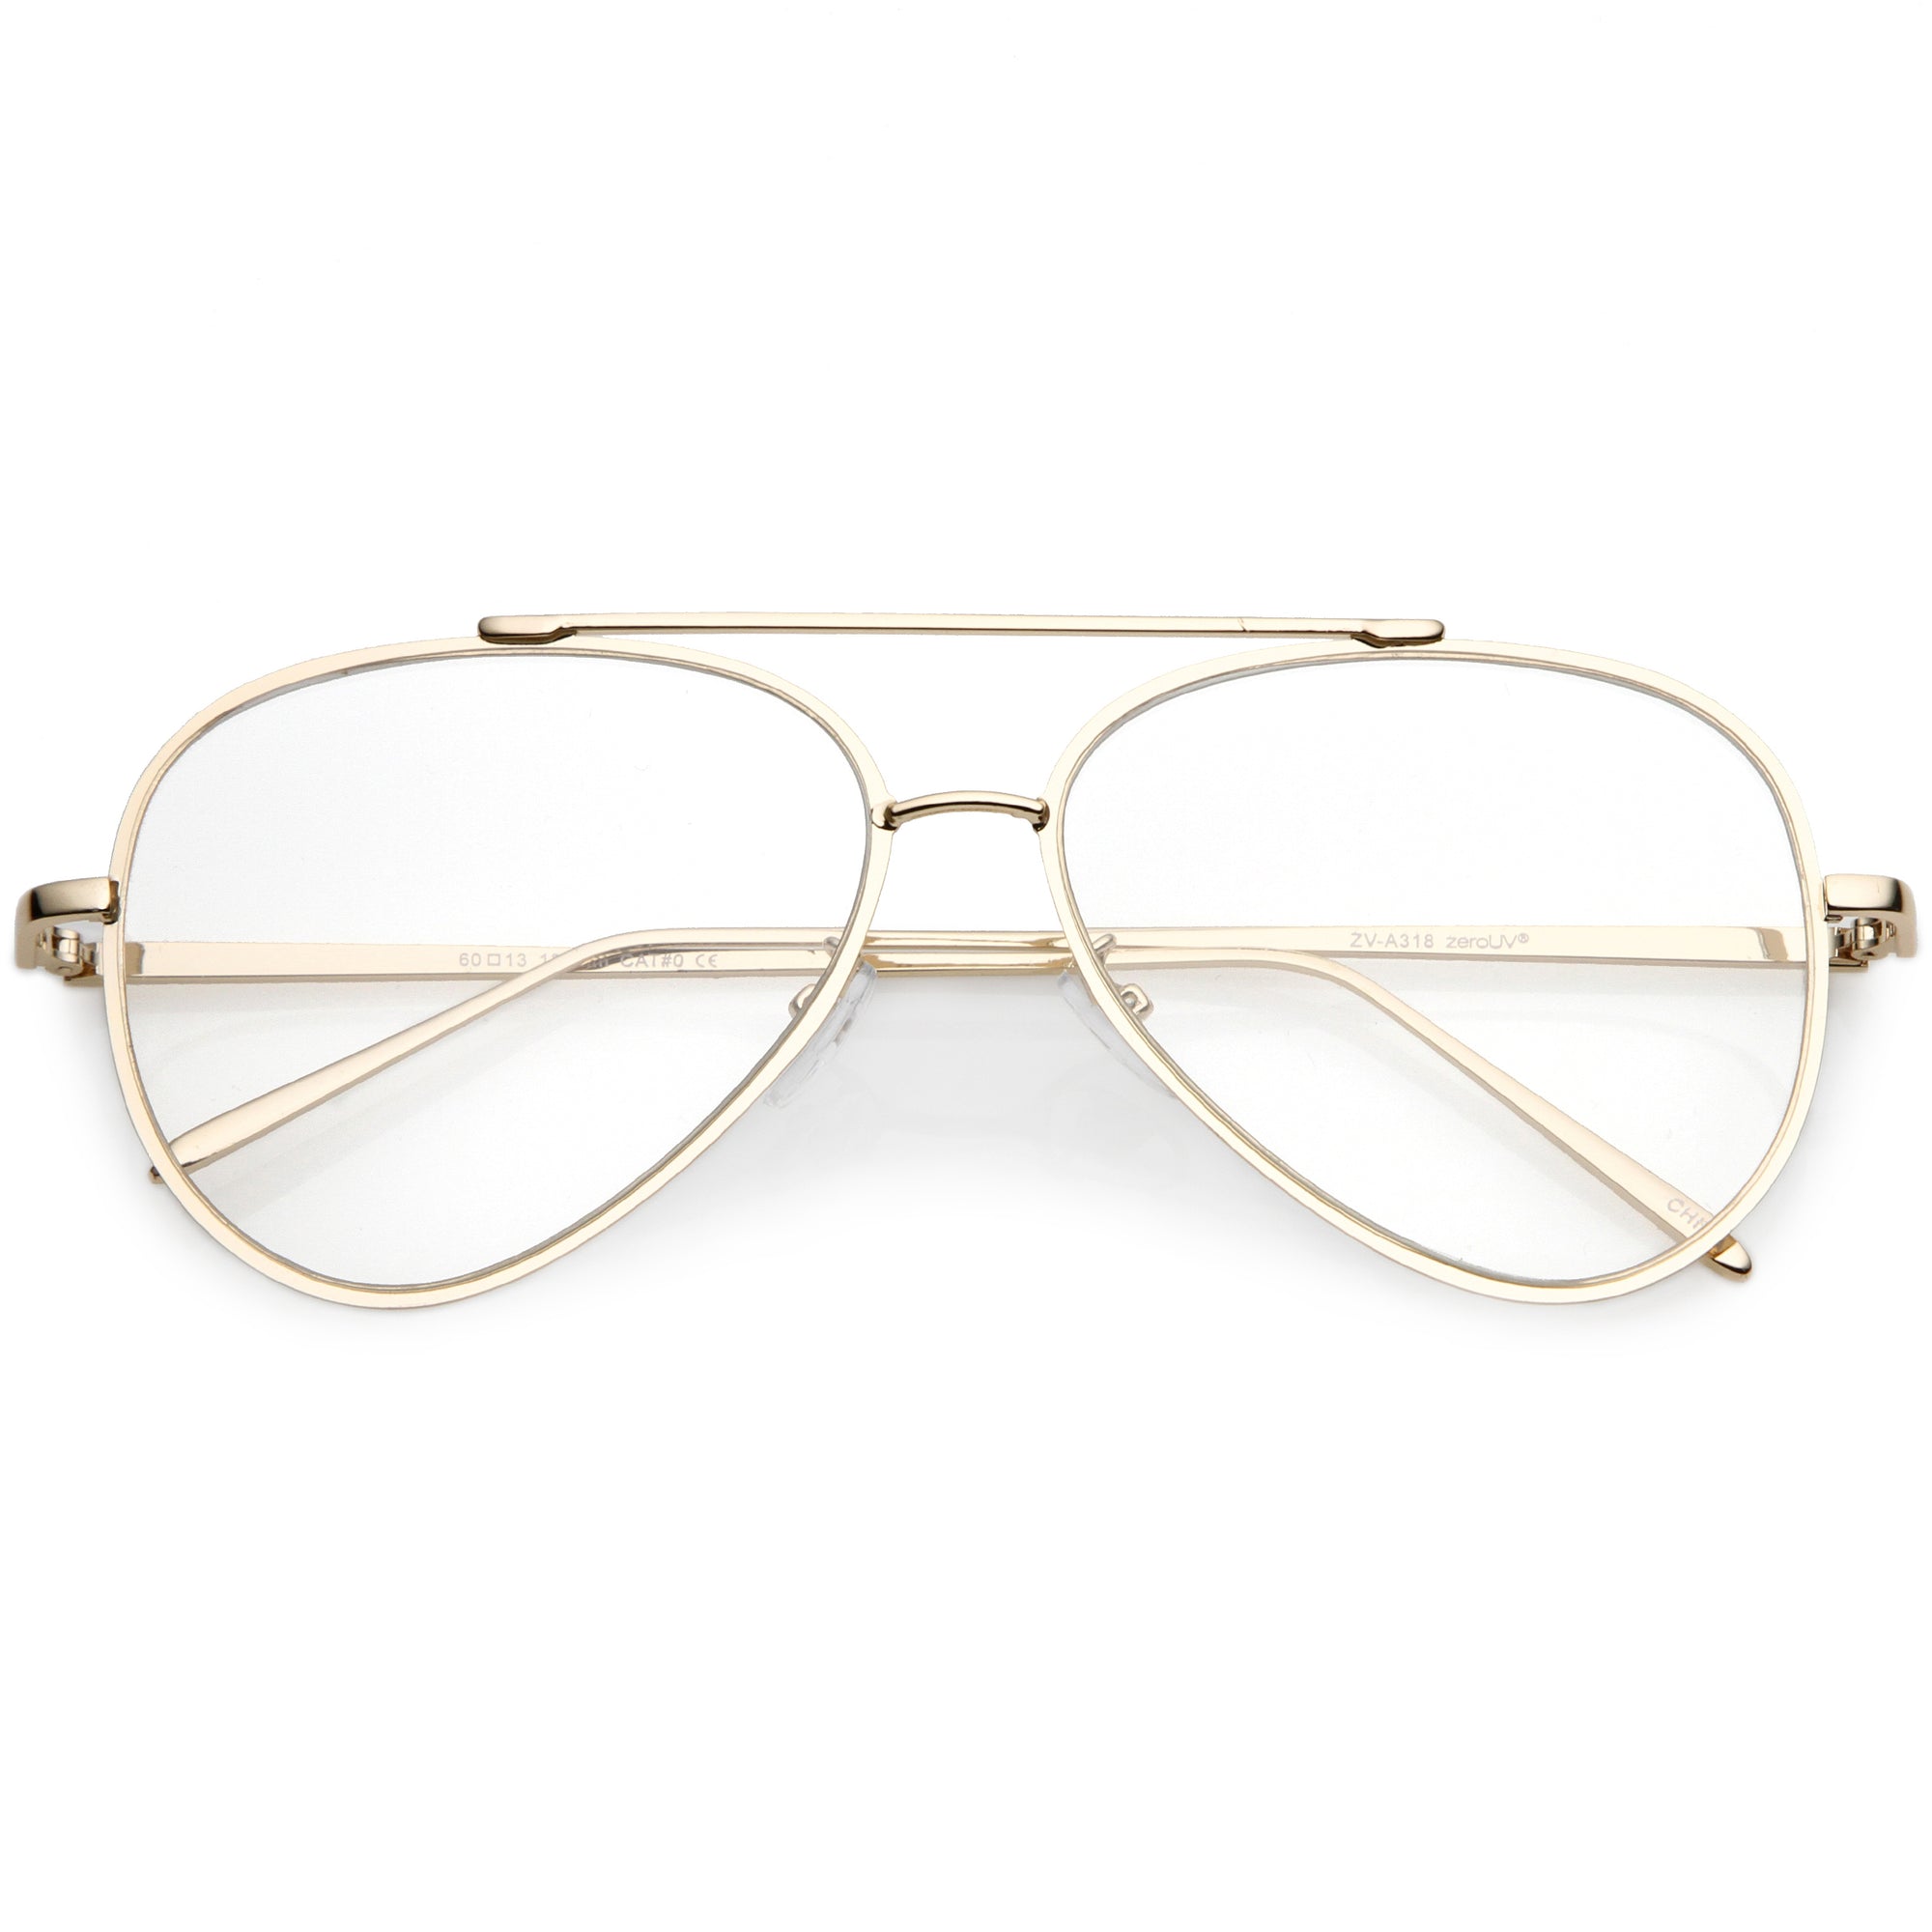 Gafas retro modernas con lentes planas transparentes en forma de lágrima de 58 mm C451